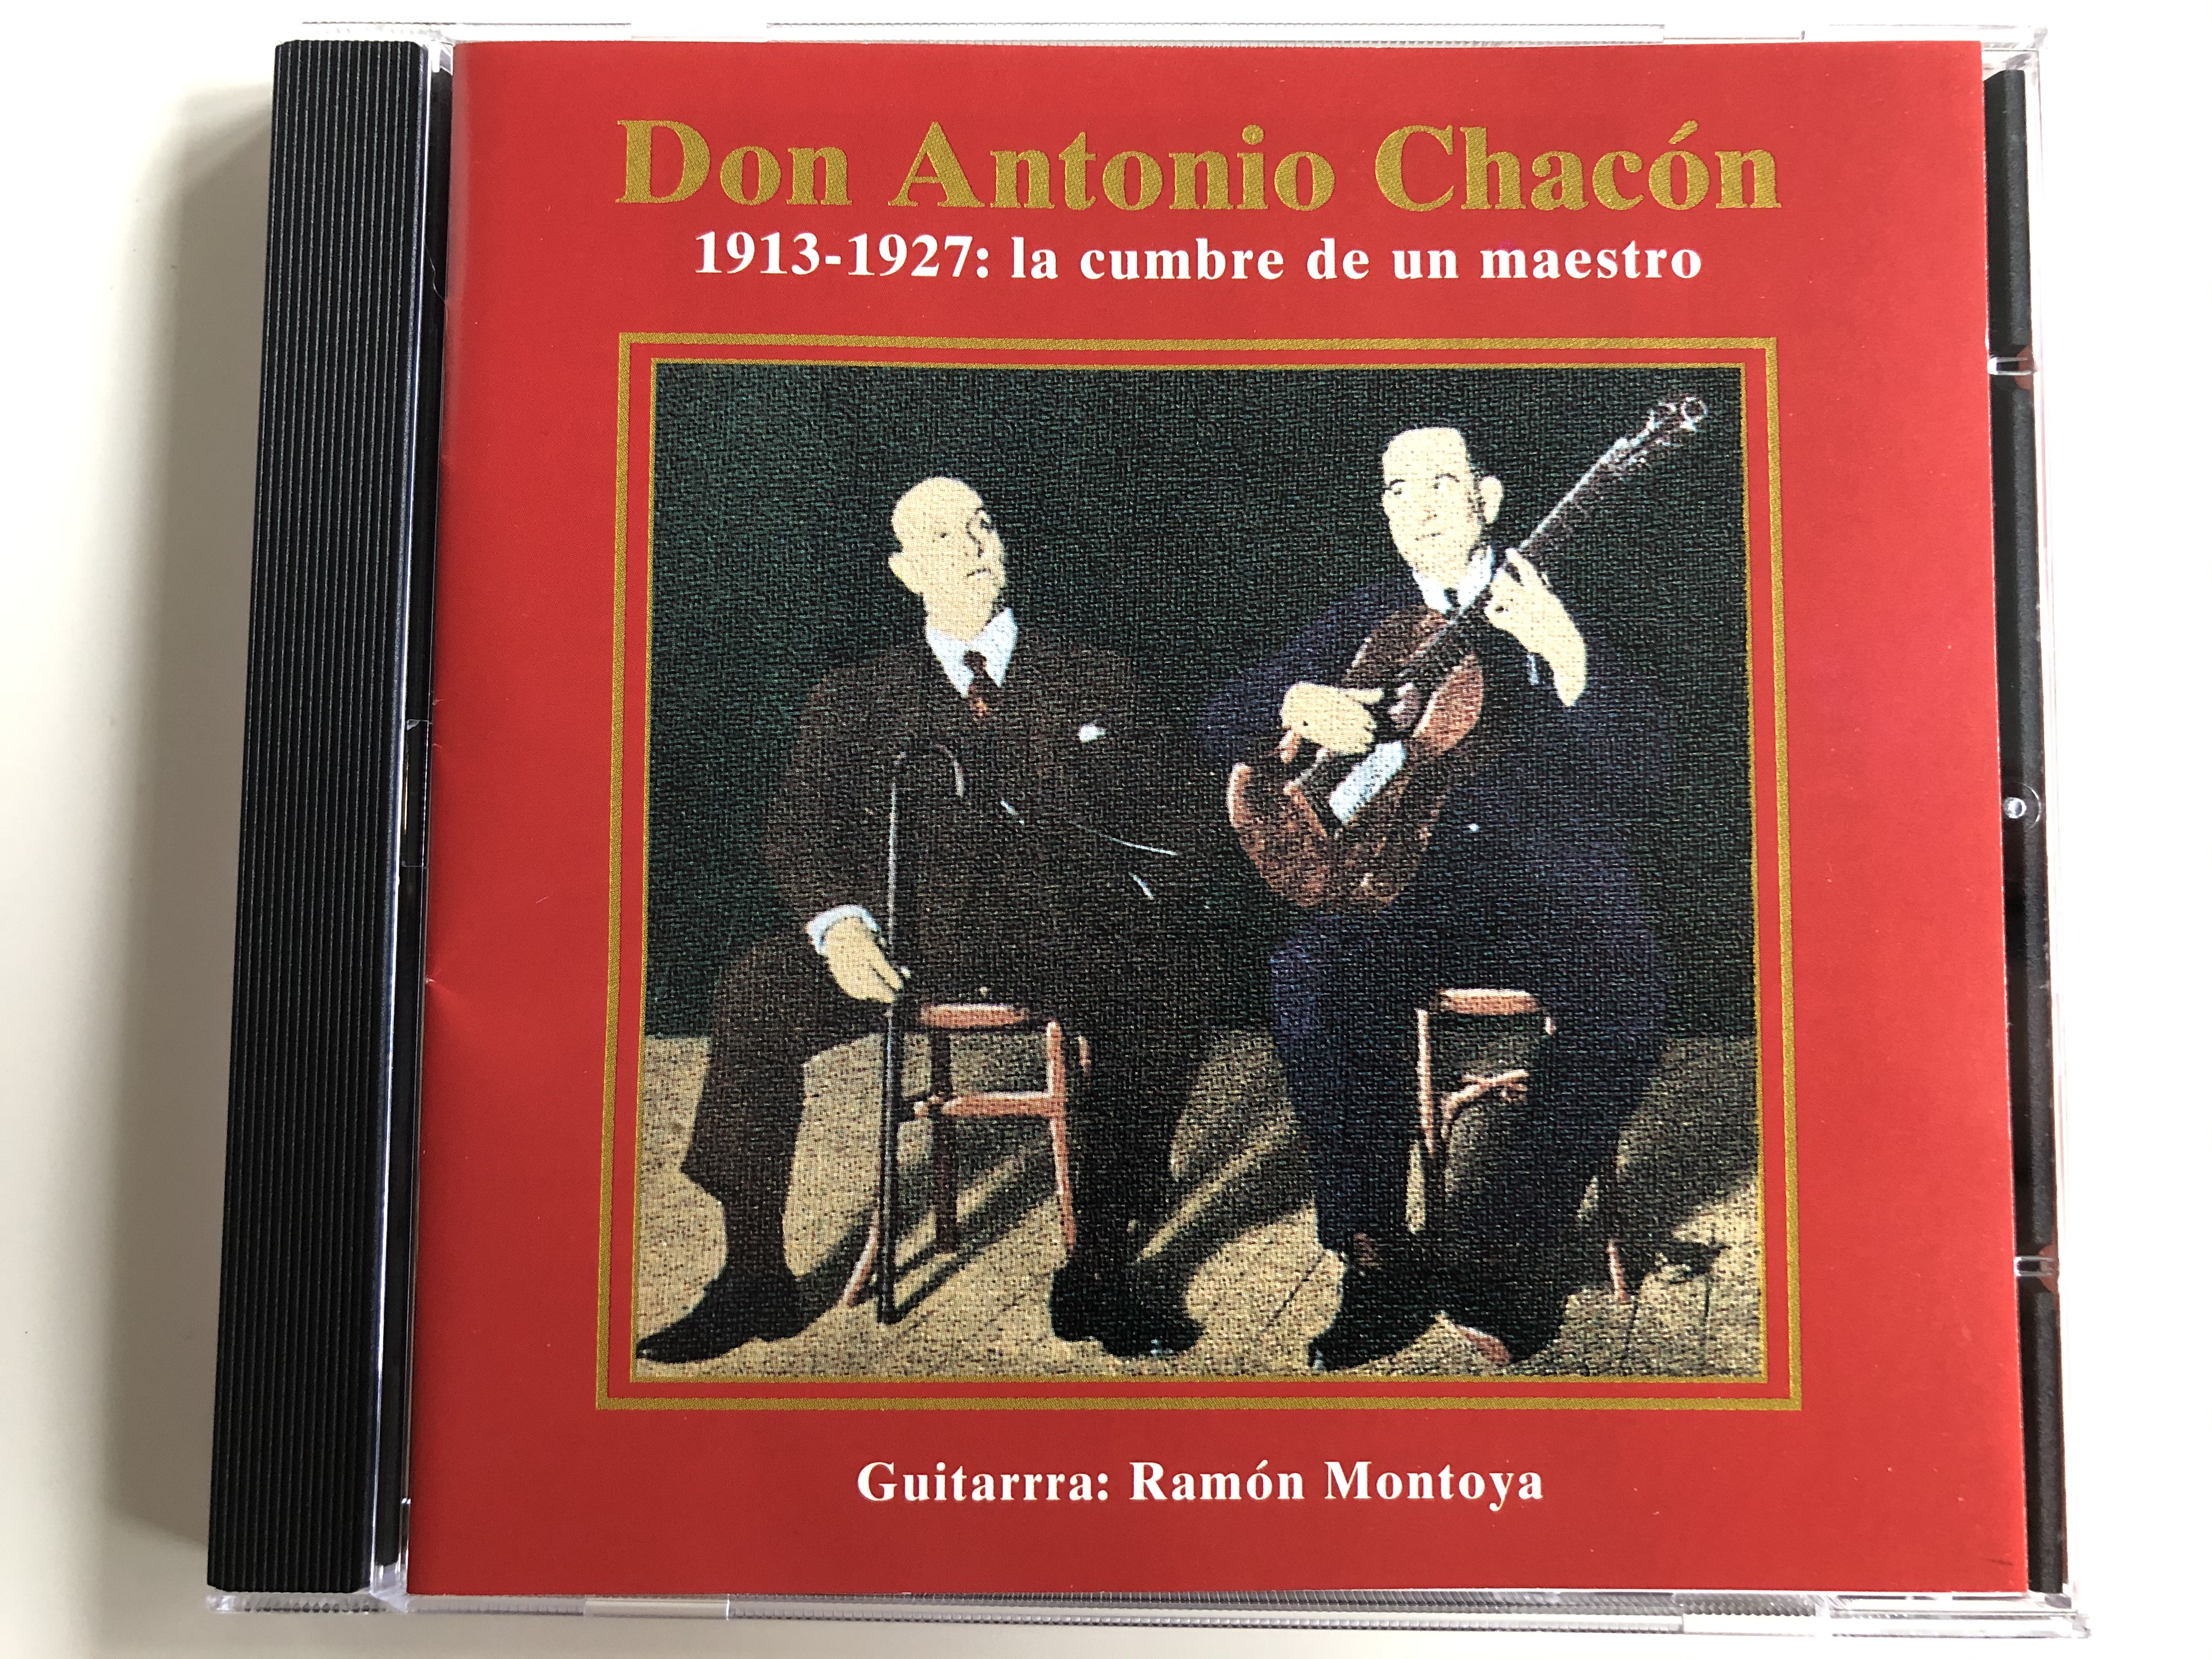 don-antonio-chac-n-1913-1927-la-cumbre-de-un-maestro-guitarrra-ramon-montoya-pastels-audio-cd-2000-204971-204-1-.jpg